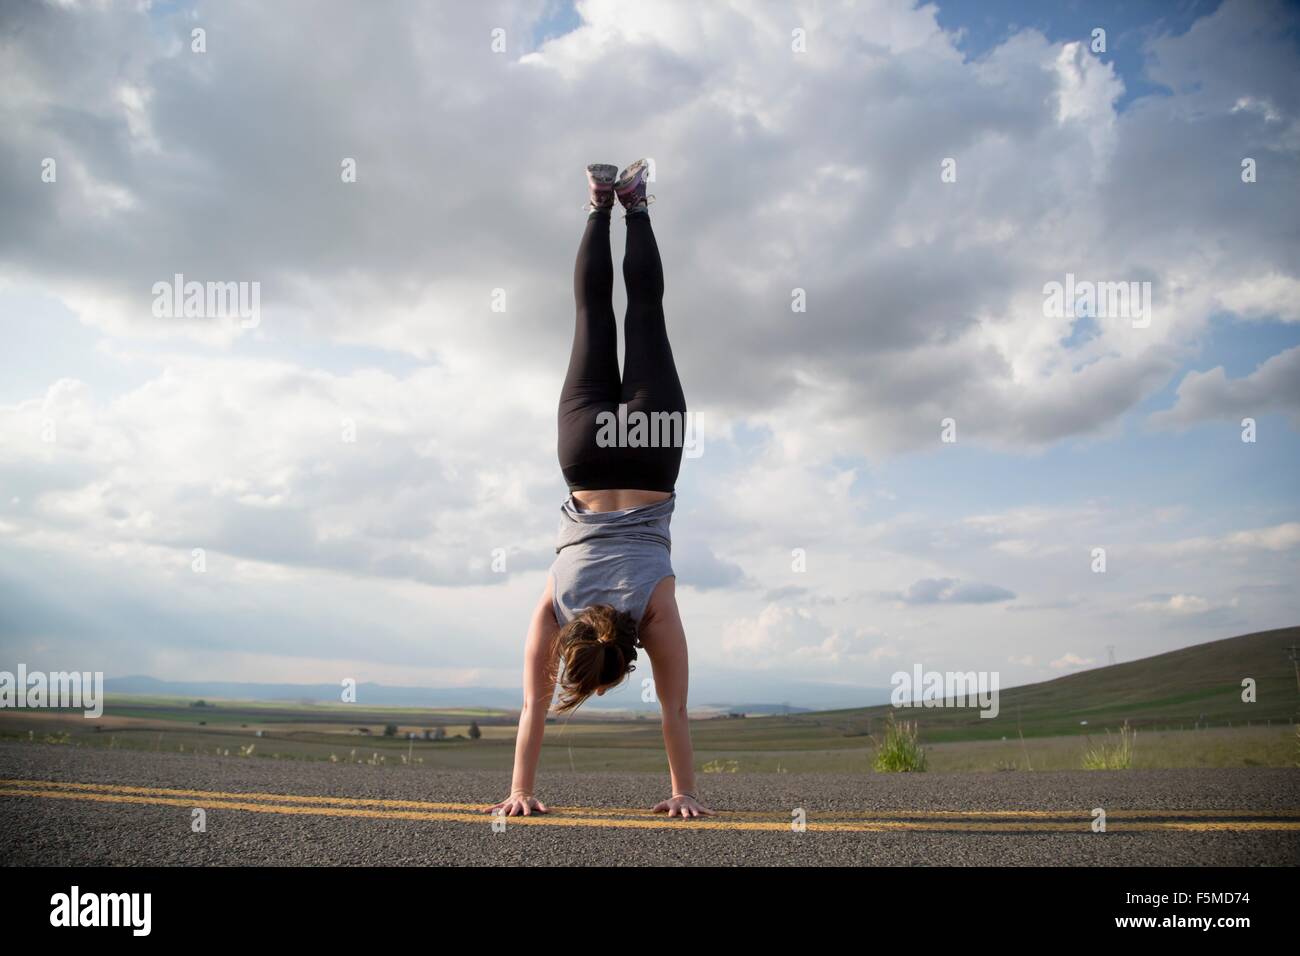 Woman doing handstand on country road, Lake Blanco, Washington, USA Stock Photo